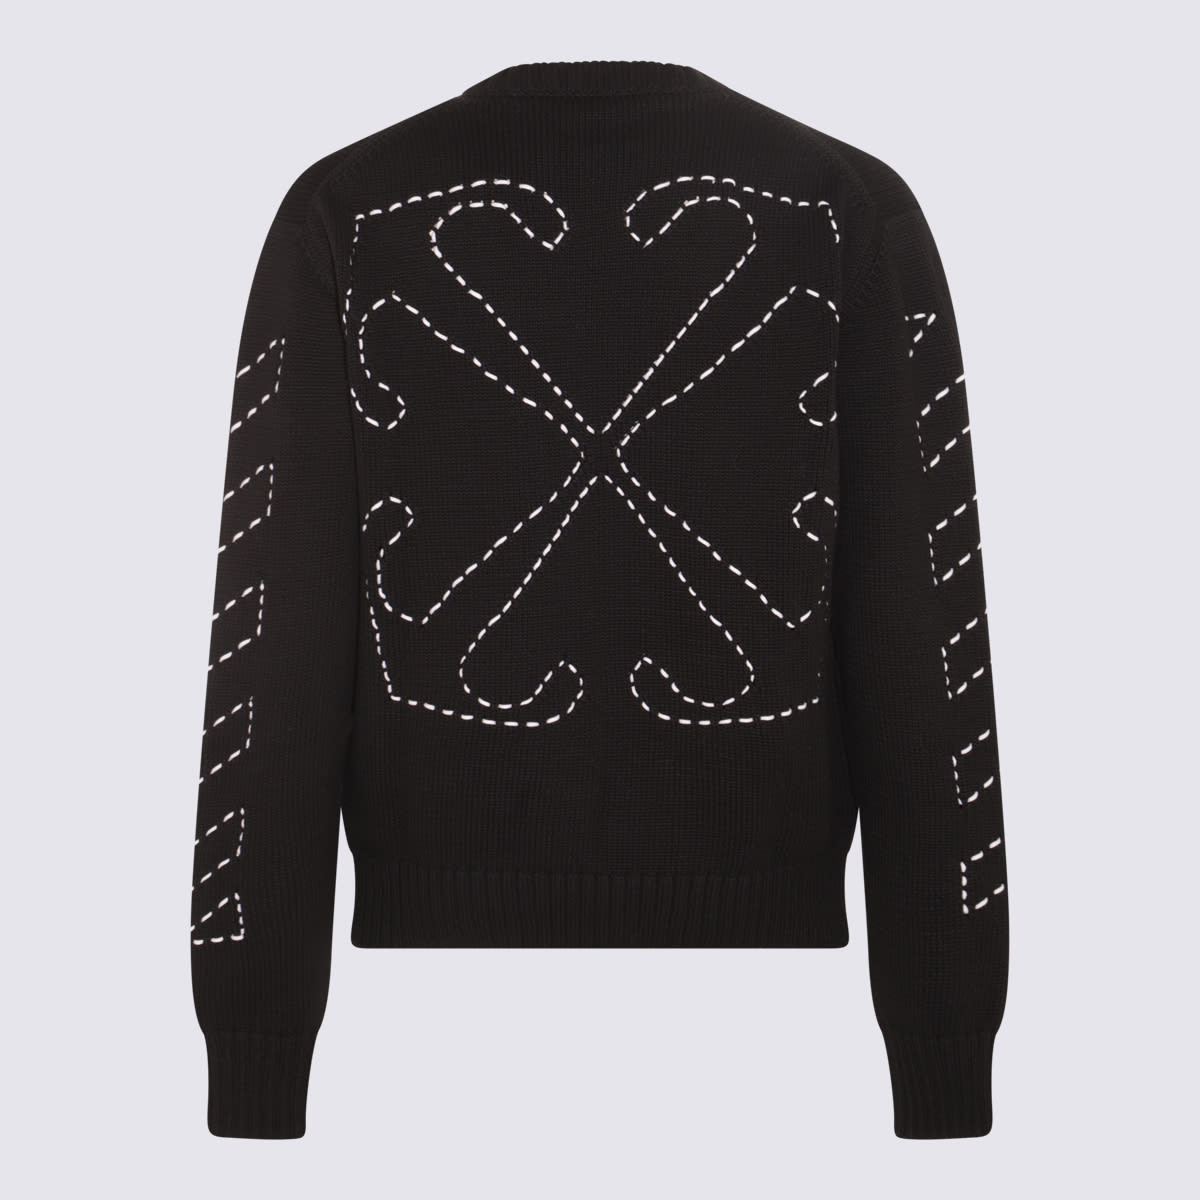 Shop Off-white Black Cotton Blend Stitch Arrows Diag Sweater